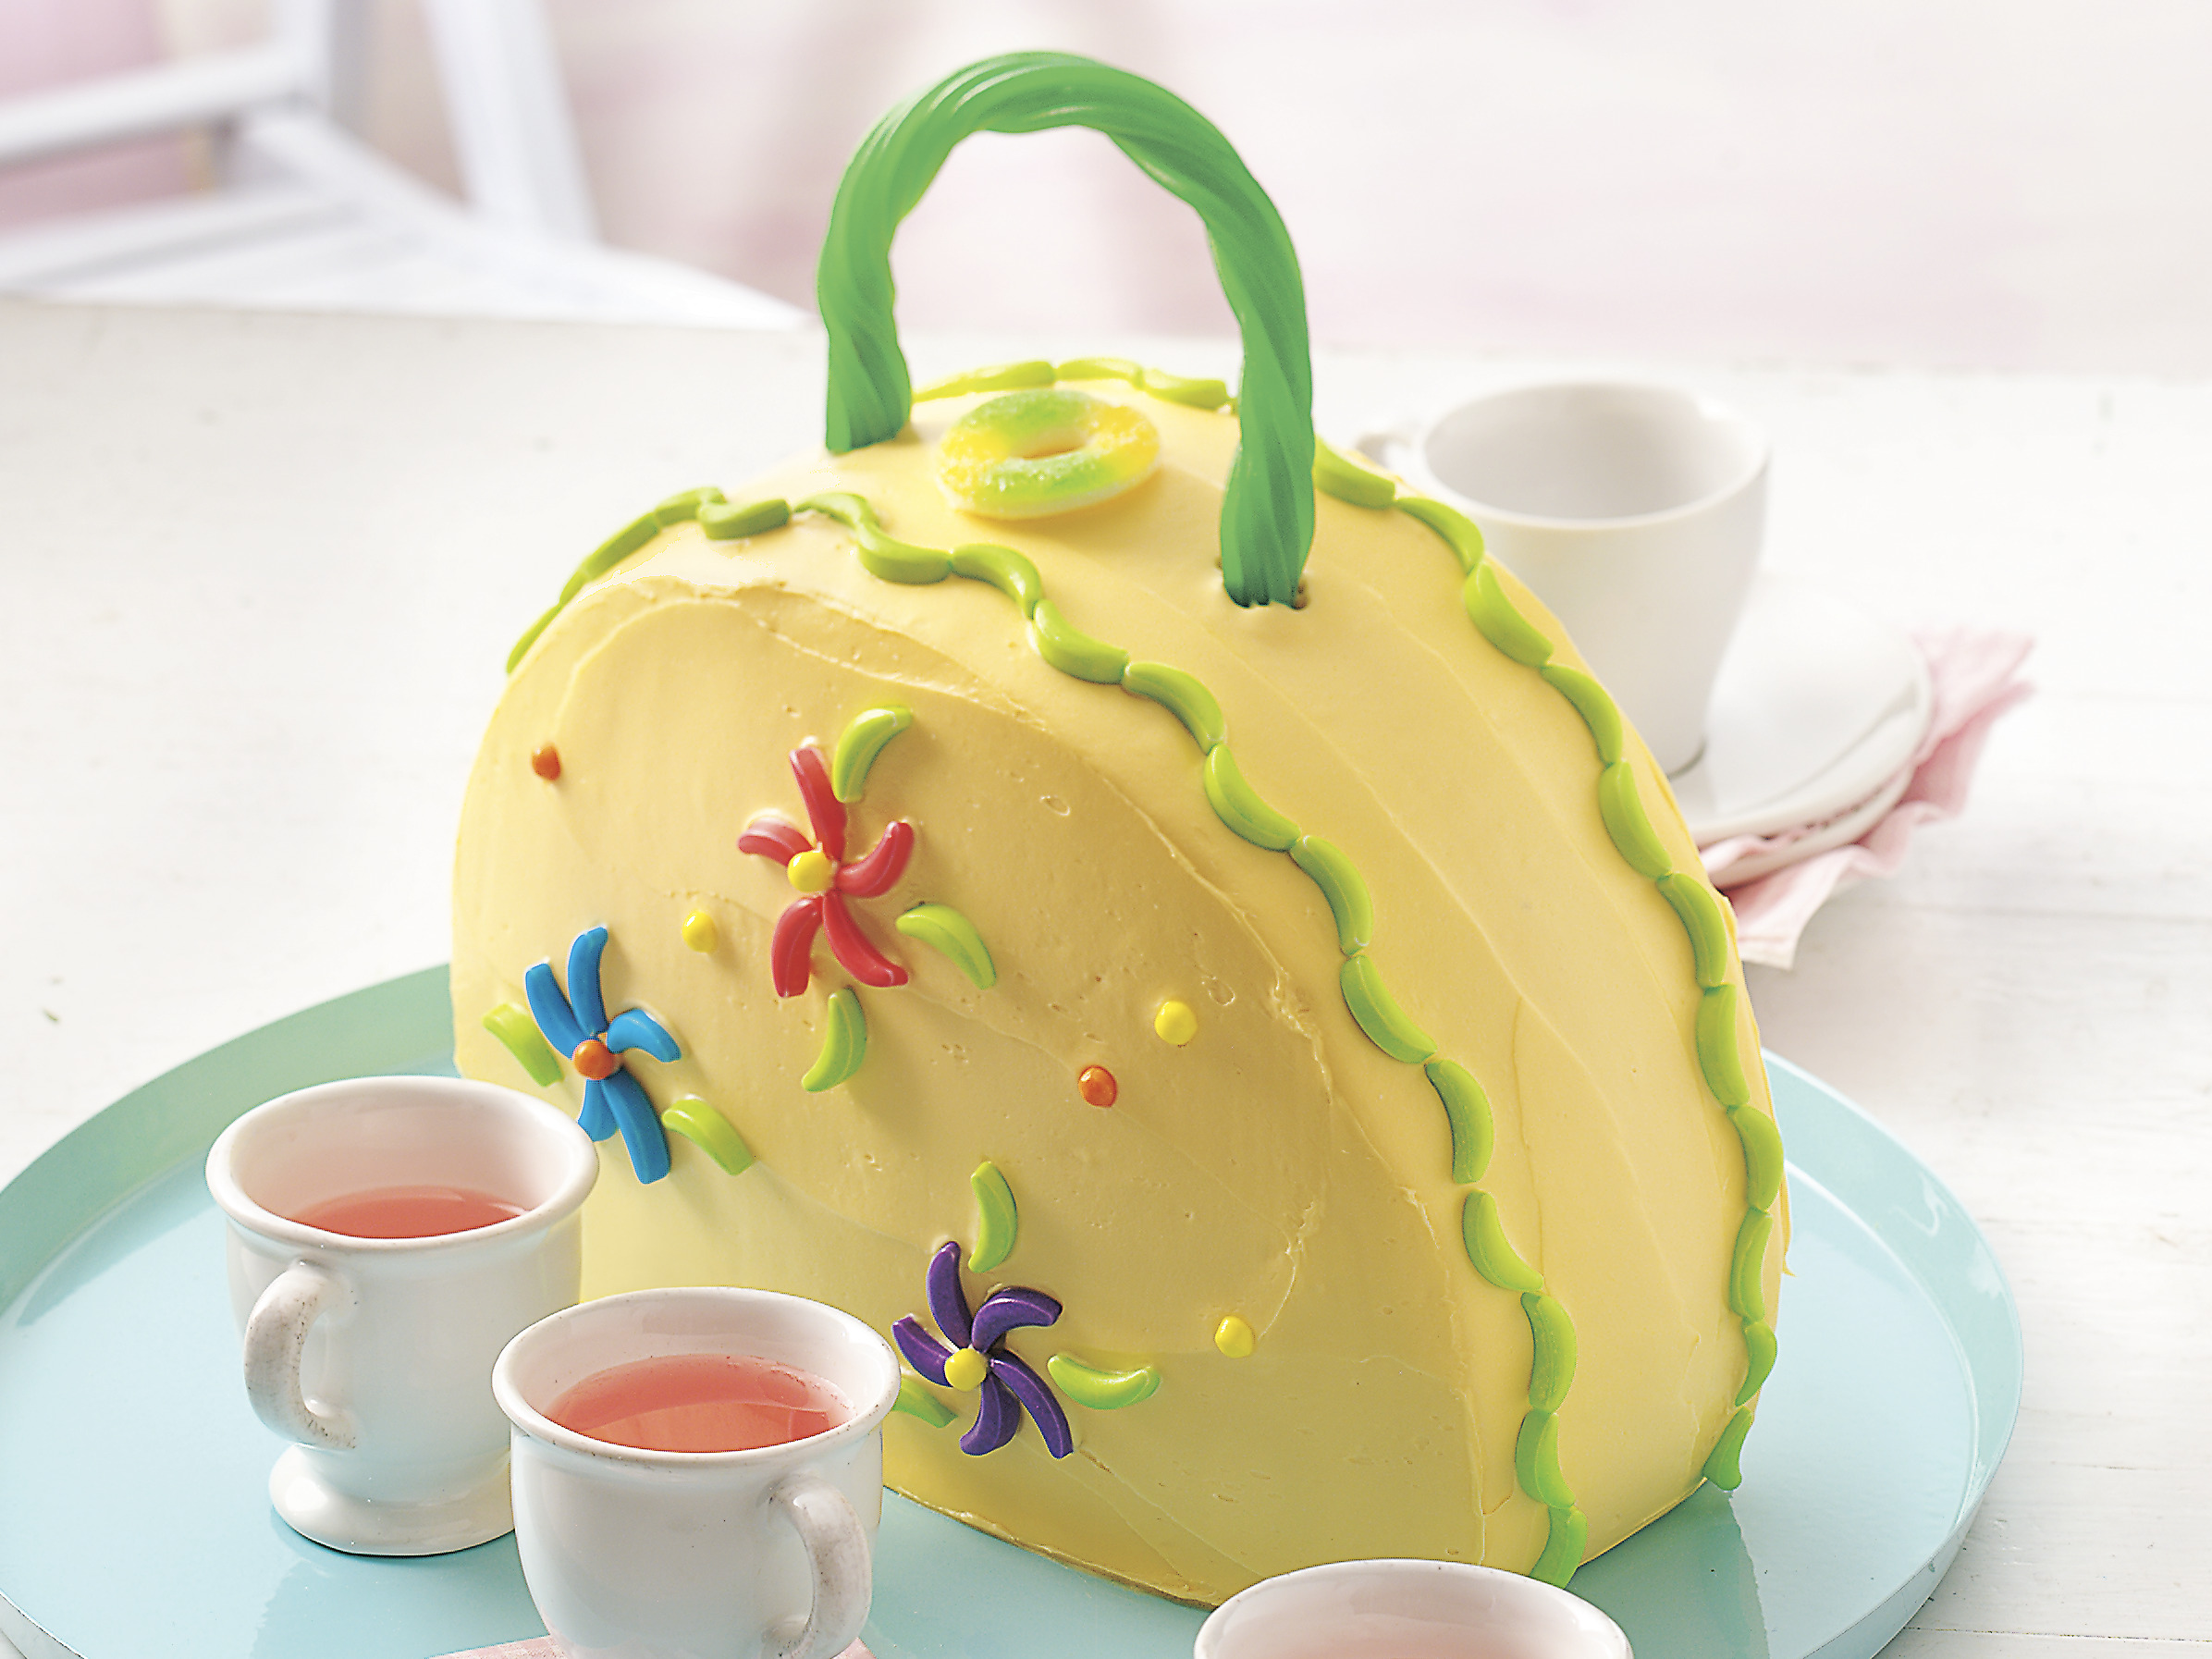 Designer Handbag Cakes | Creative Cake Design